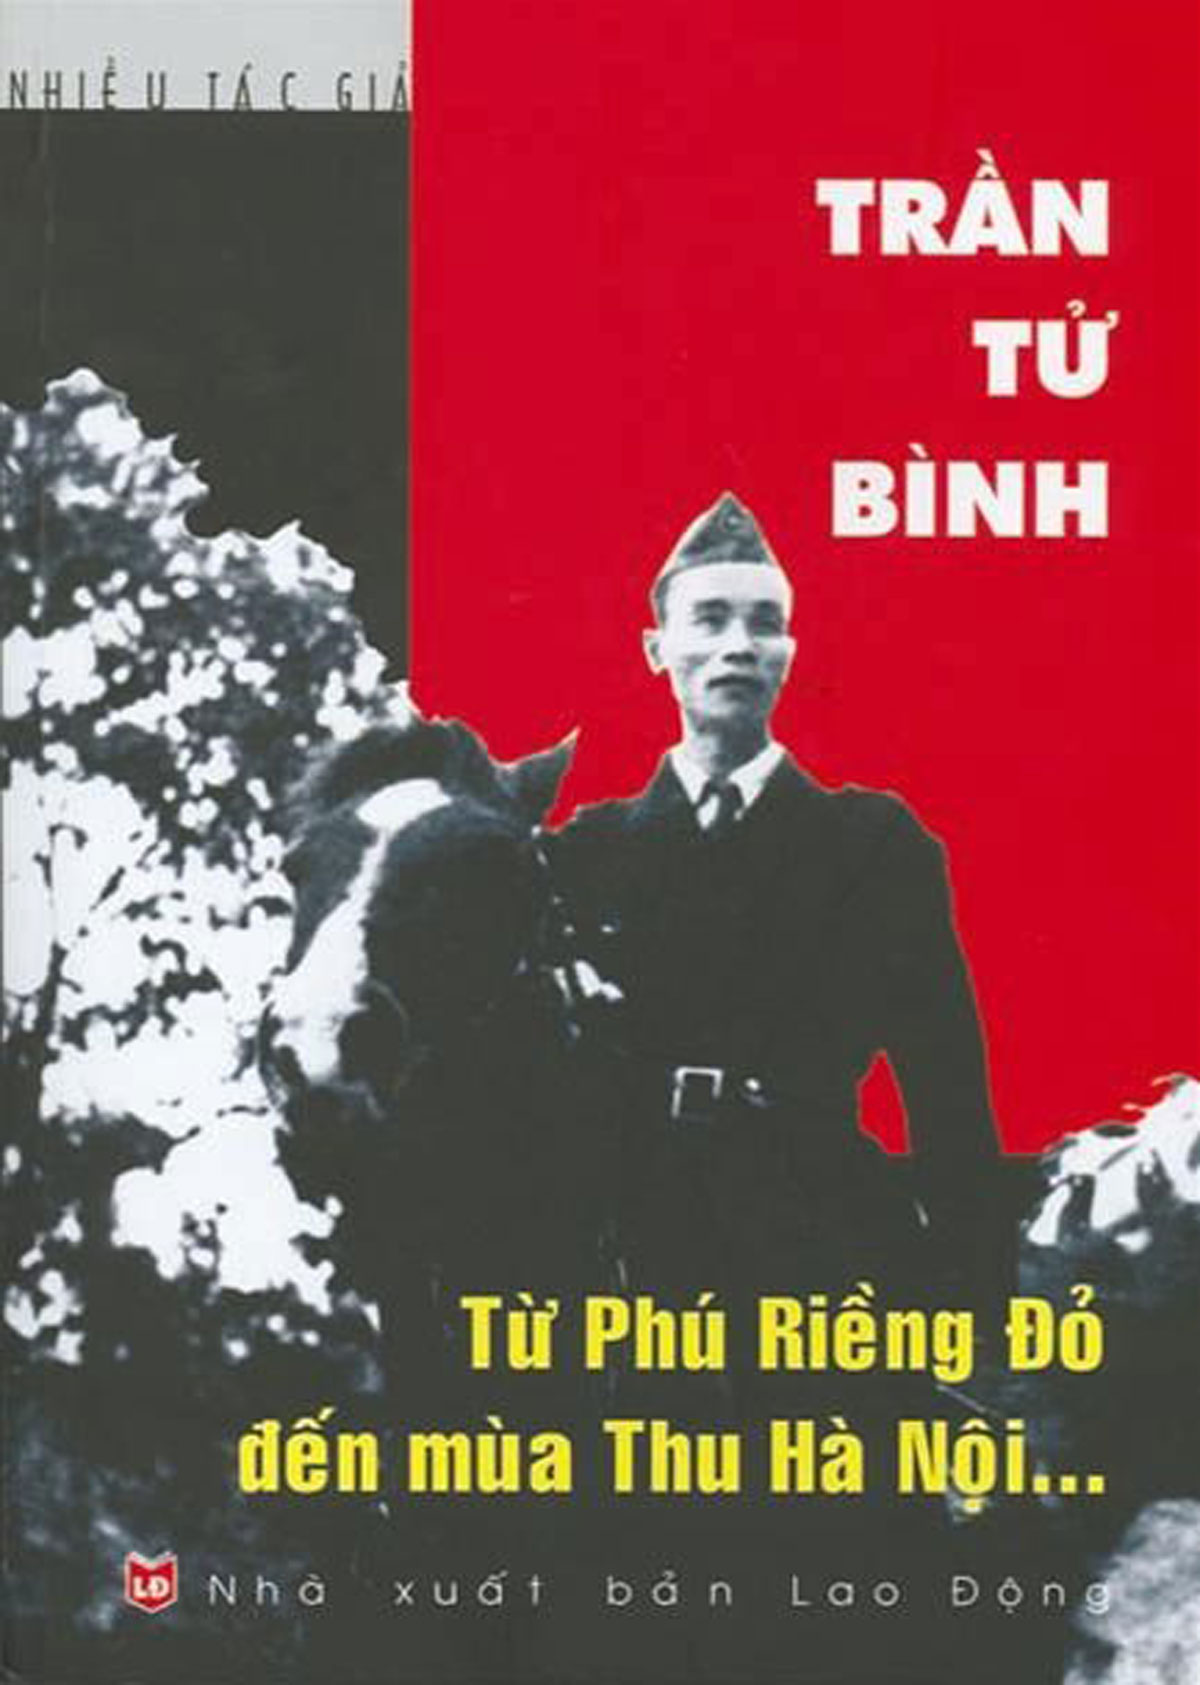 Thiếu tá Trần Kiến Quốc “Mỗi khi tháng Tám về trong lòng tôi lại dâng trào cảm xúc rất đặc biệt”